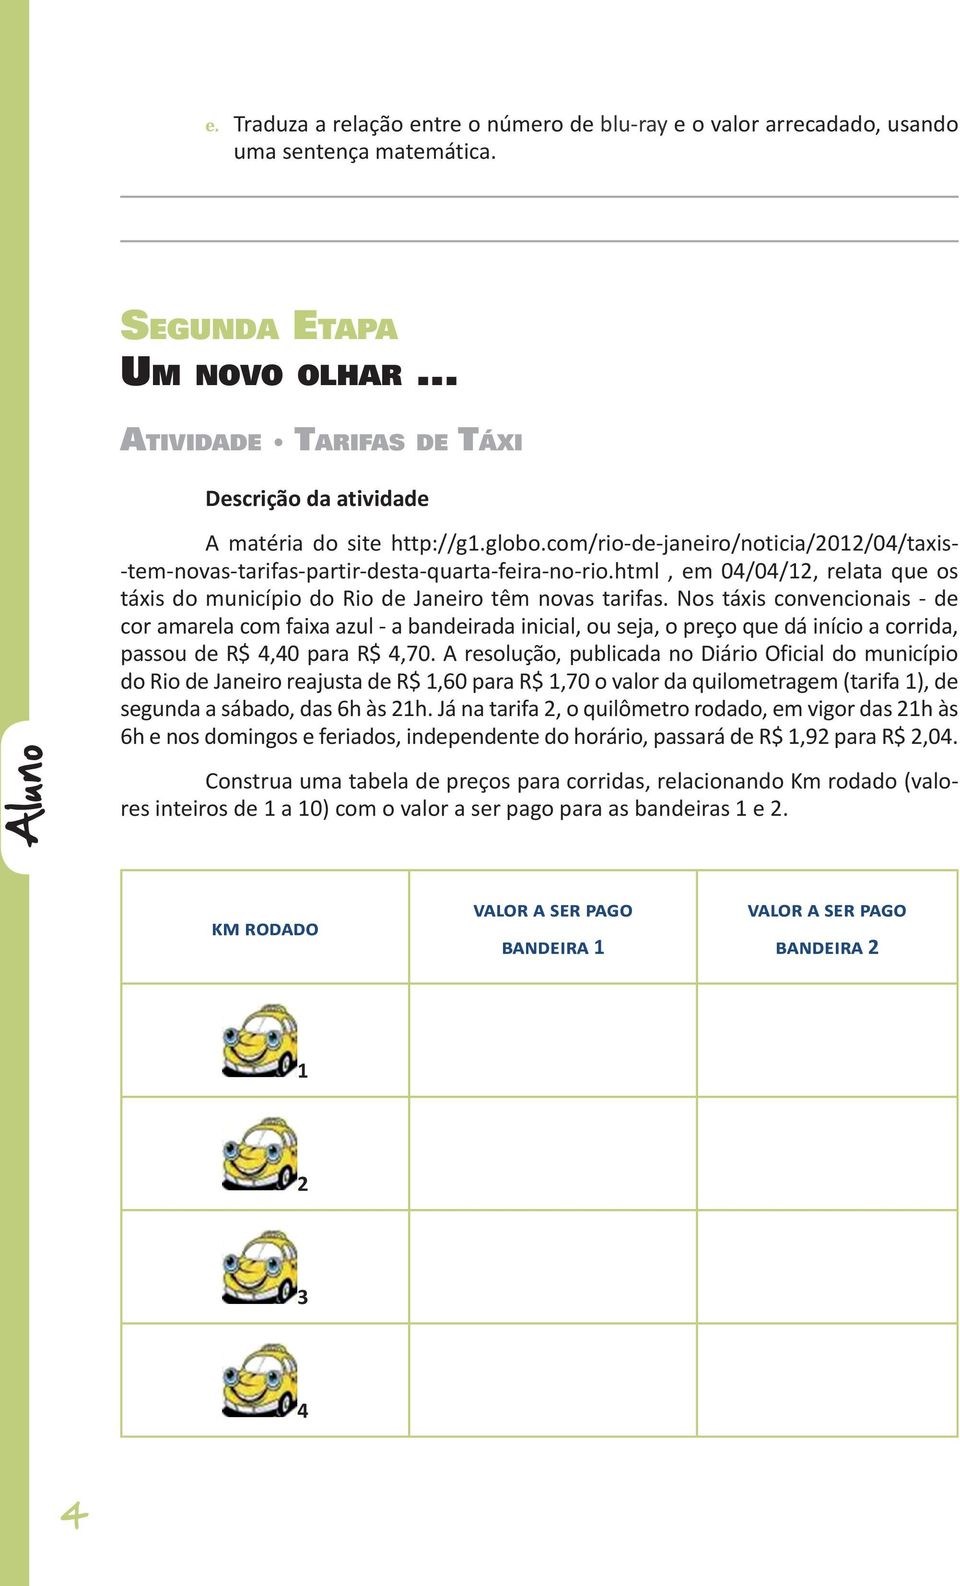 html, em 04/04/12, relata que os táxis do município do Rio de Janeiro têm novas tarifas.